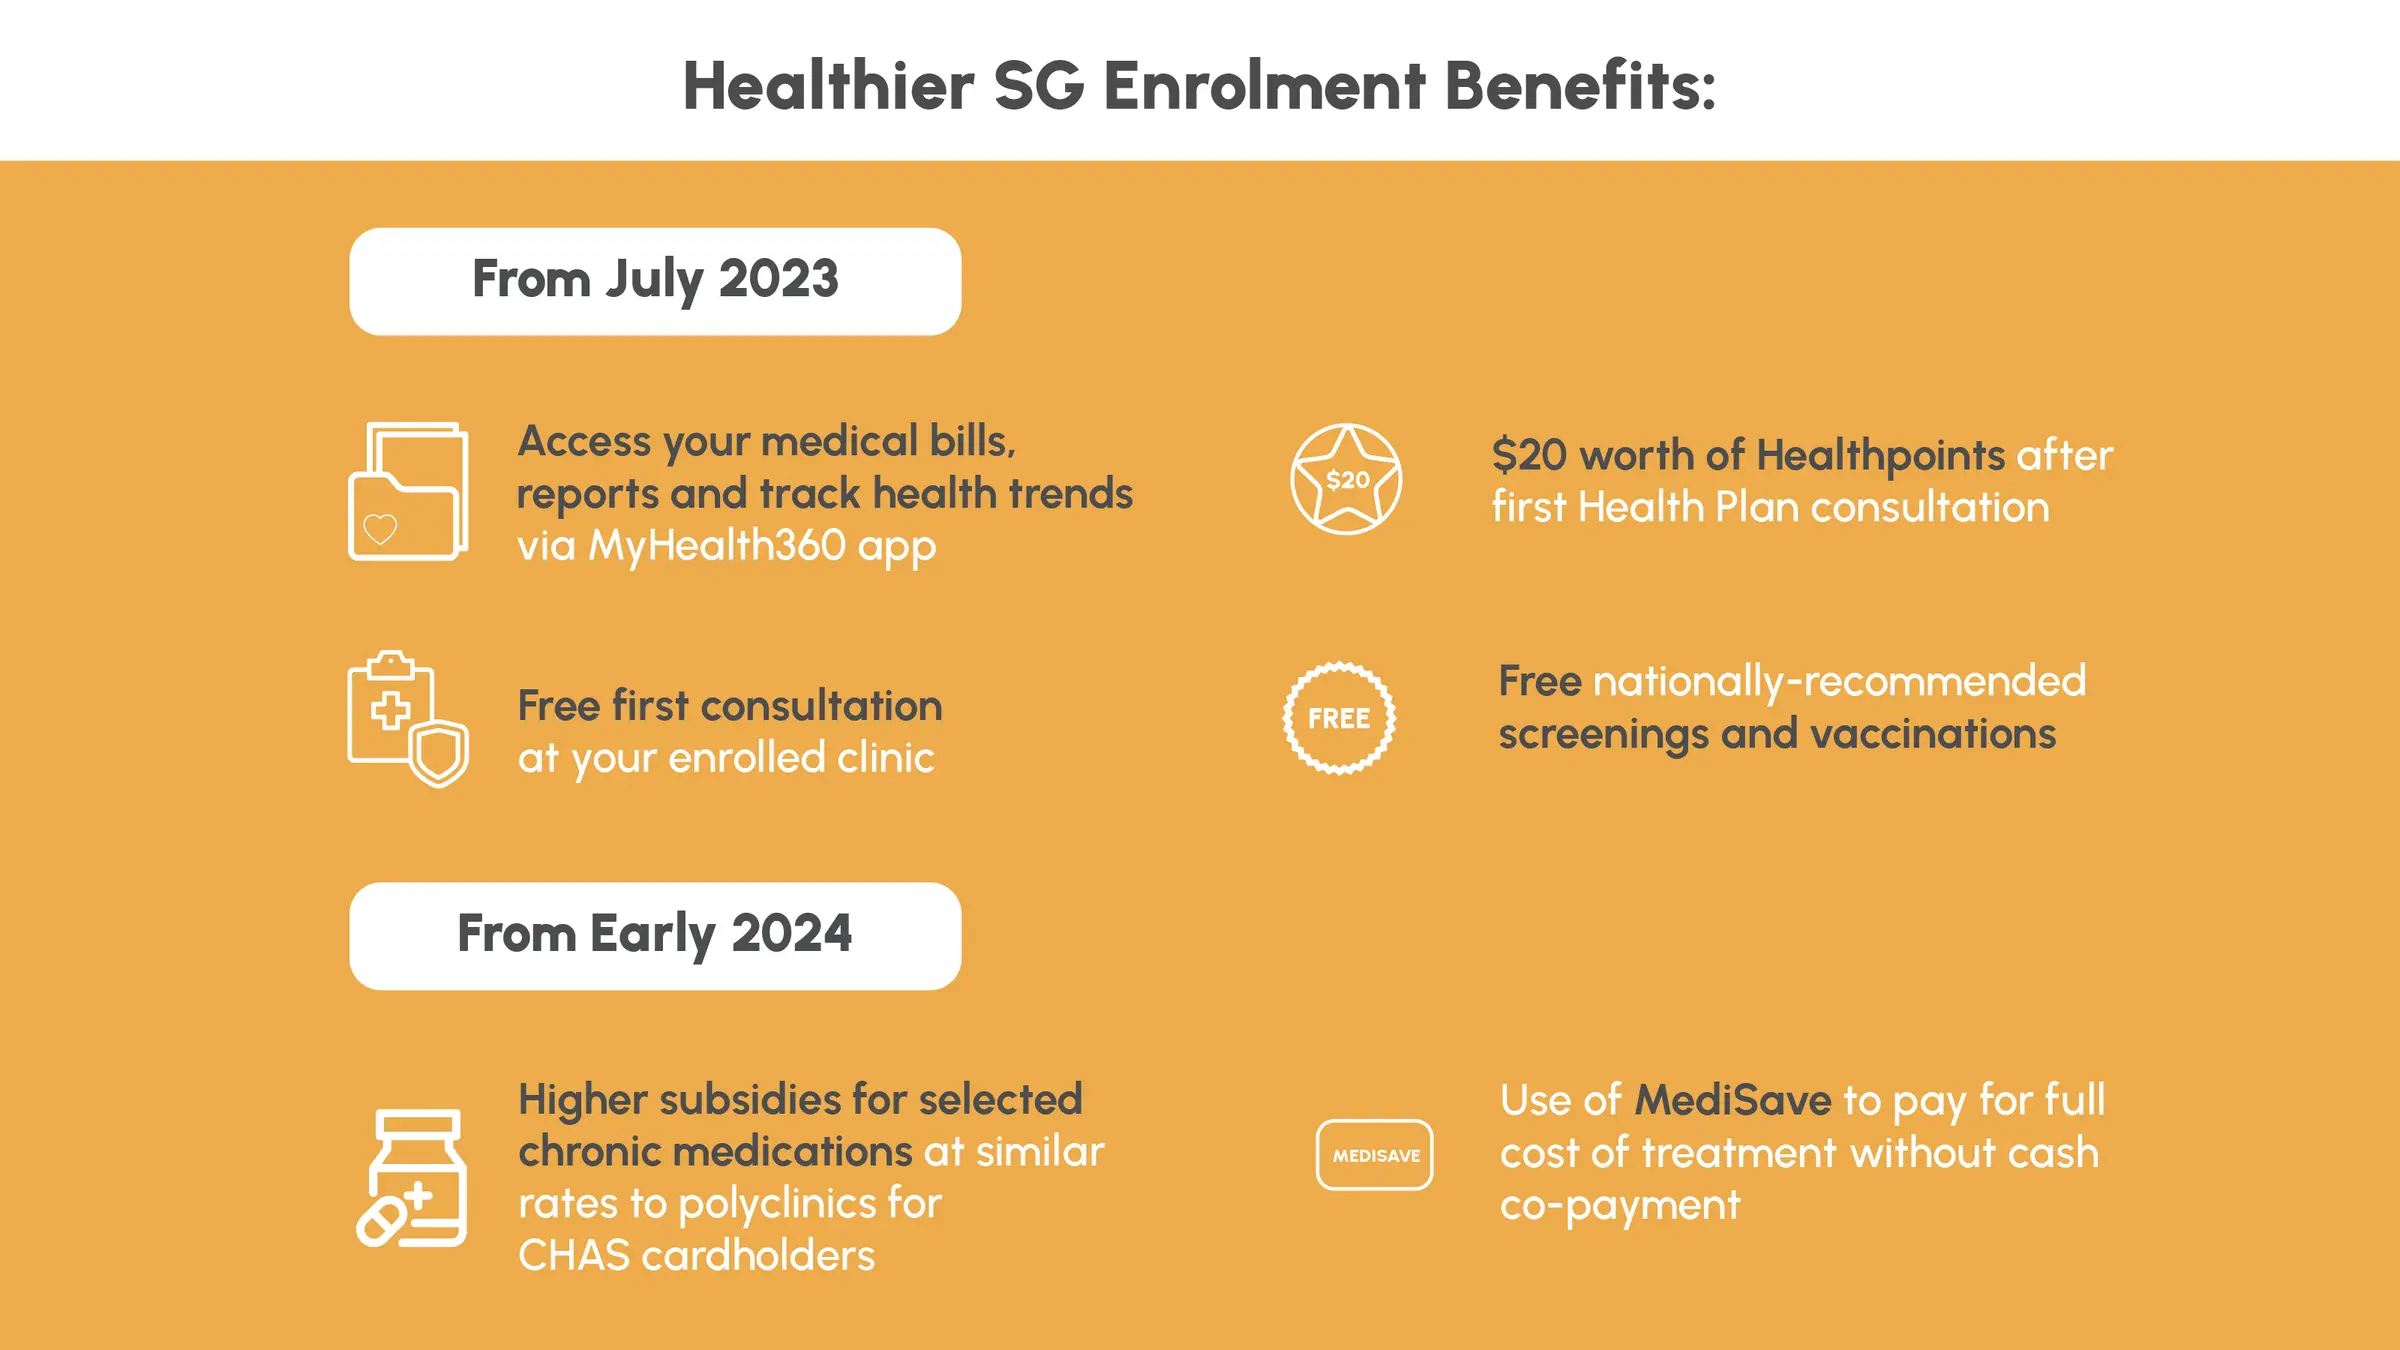 Healthier SG Benefits